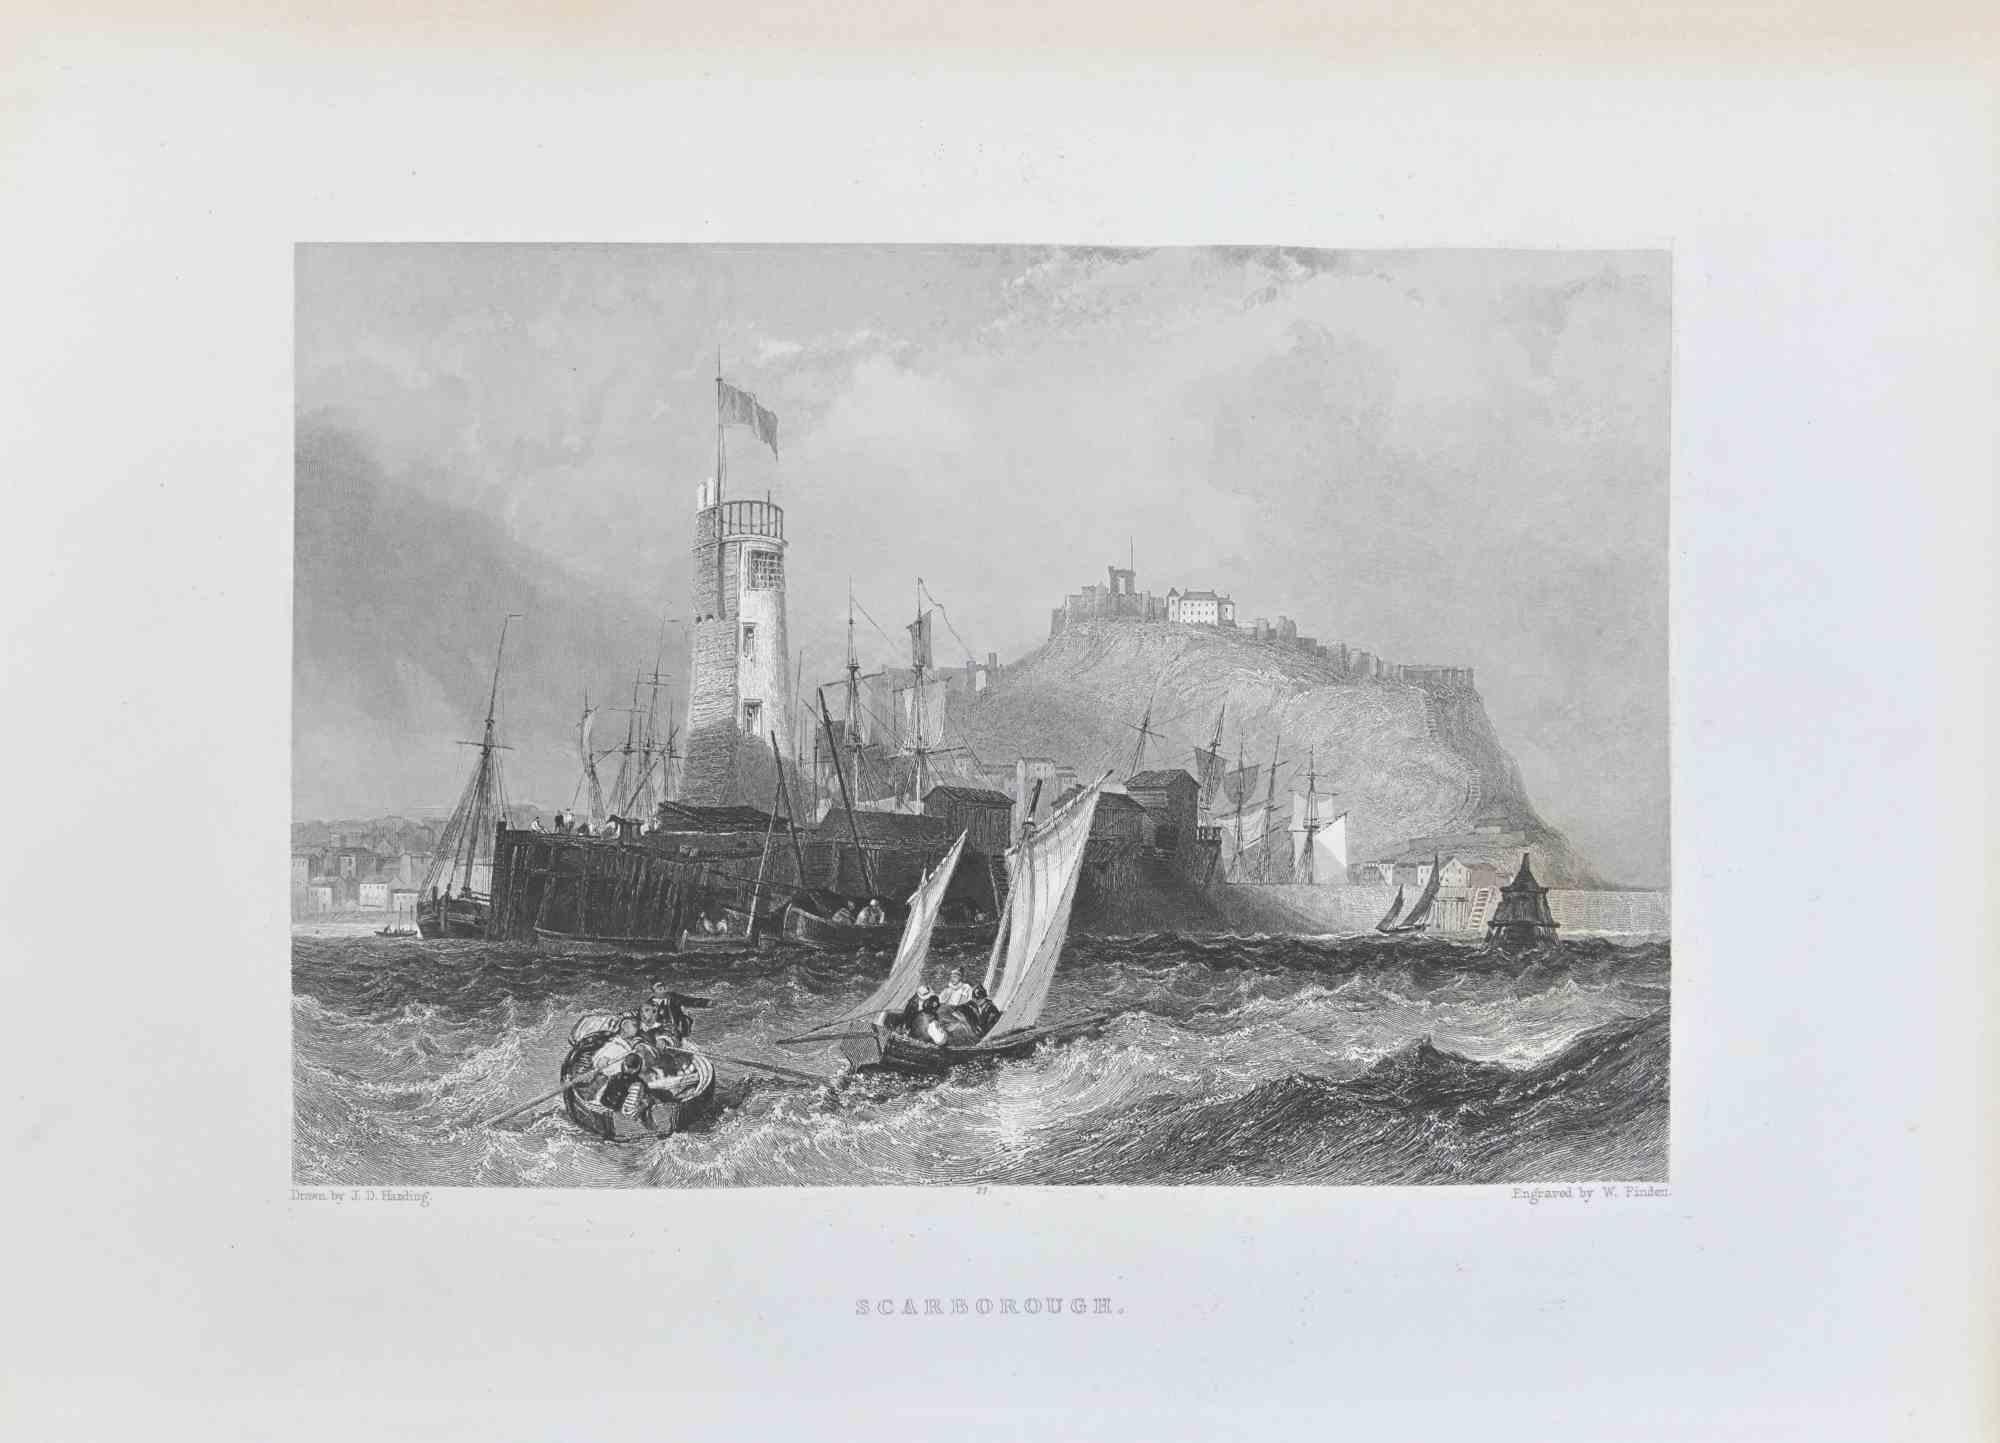 Scarborough ist eine Radierung aus dem Jahr 1845 von Edward Francis Finden.

Signiert auf der Platte. 

Unten in der Mitte betitelt, aus der Serie der "Ports of Great Britain".

Guter Zustand mit leichten Stockflecken.

Das Kunstwerk ist in einer